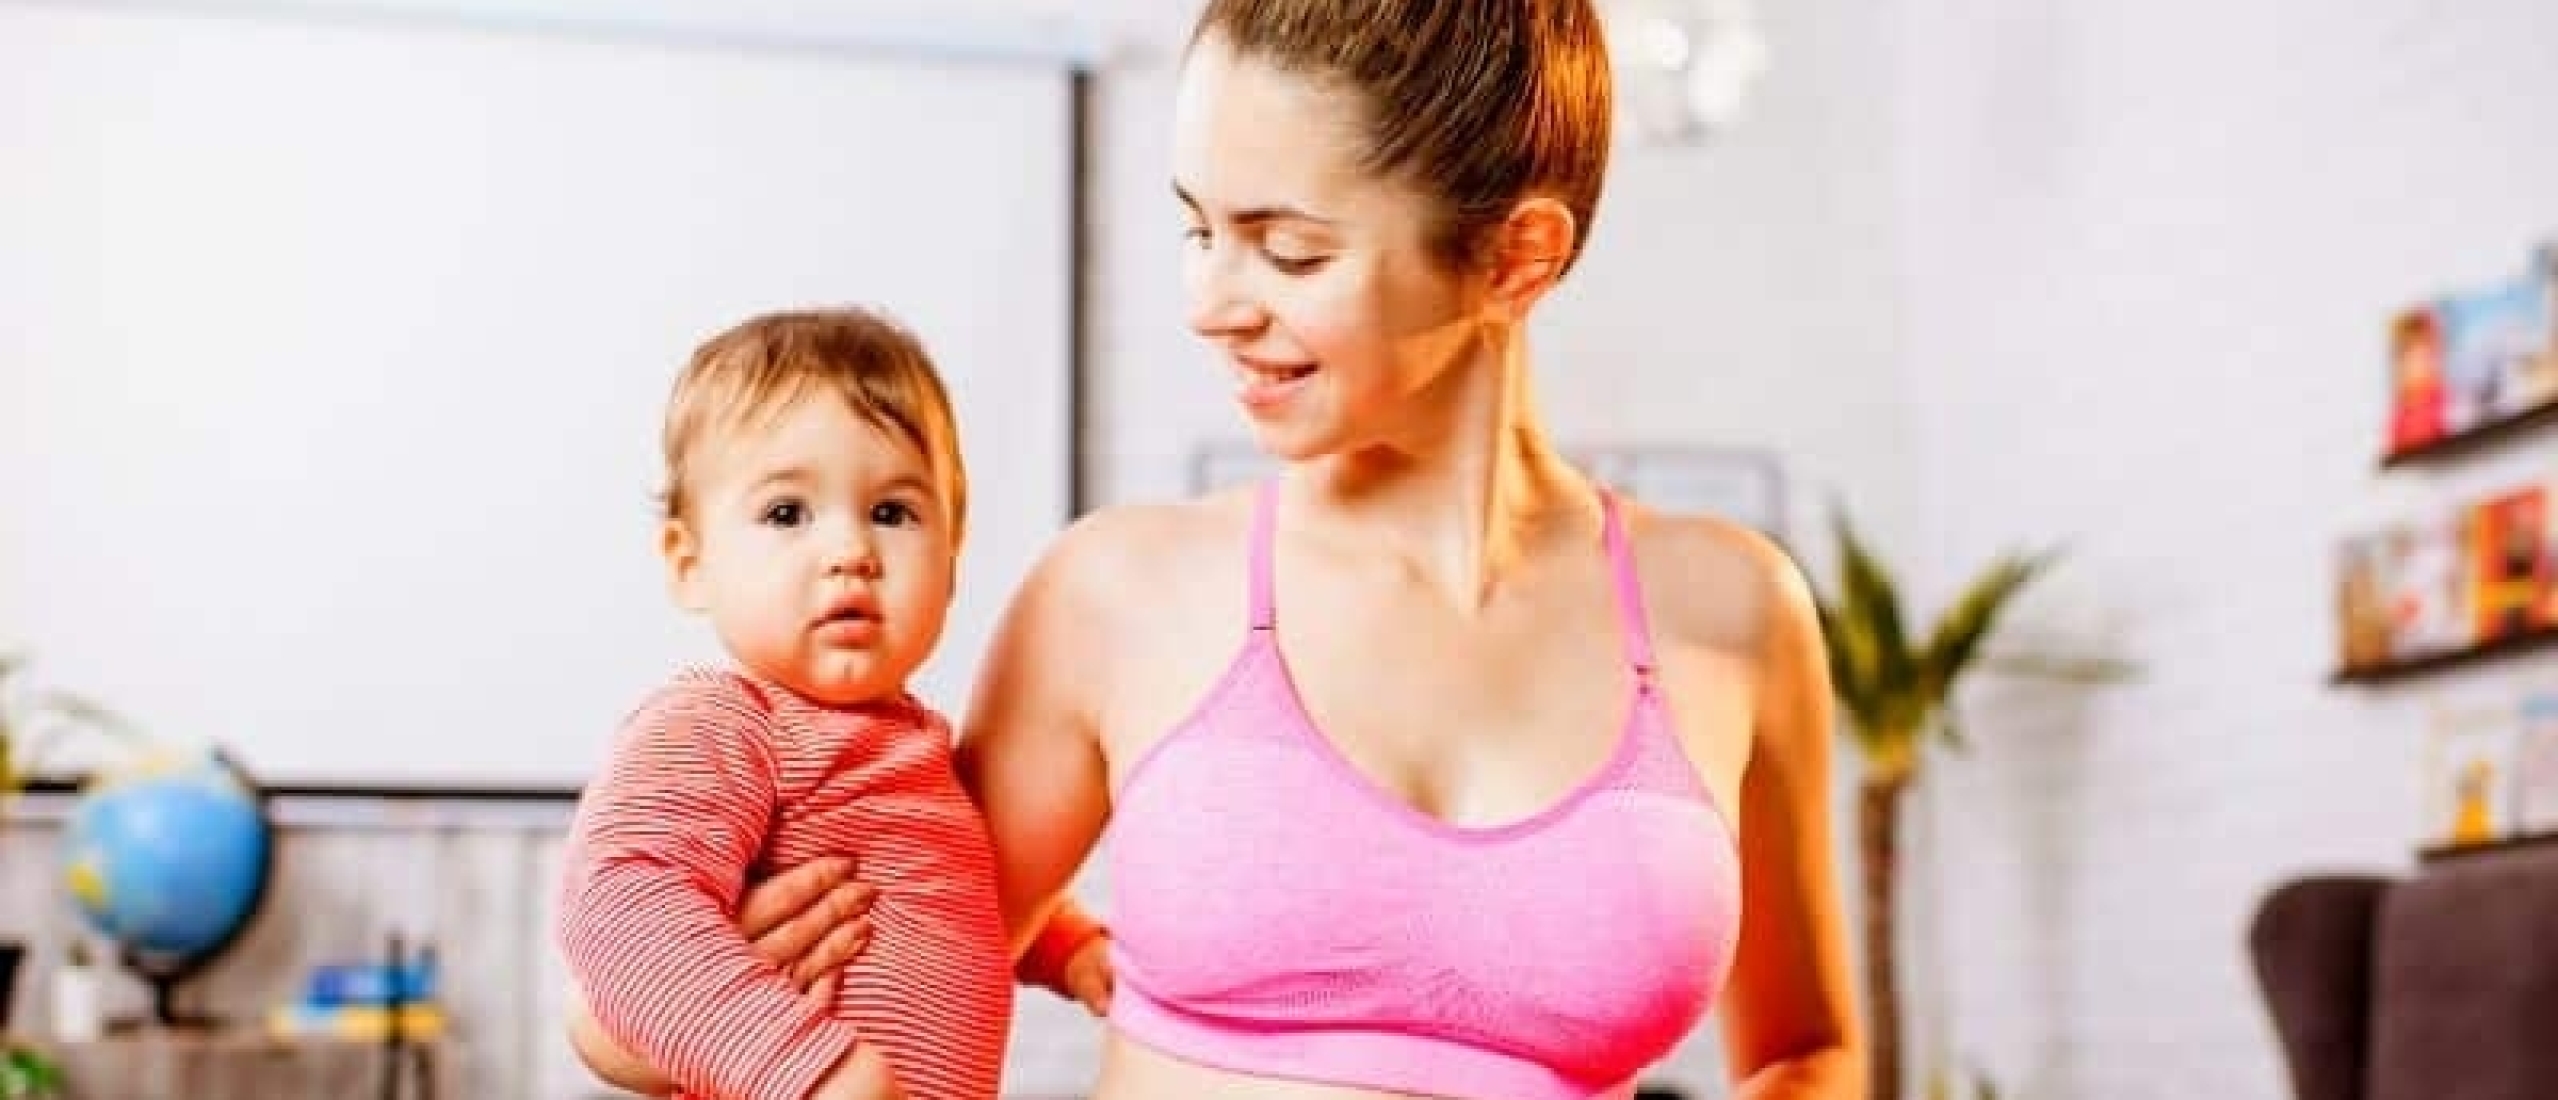 5 tips voor verantwoord afvallen na je bevalling